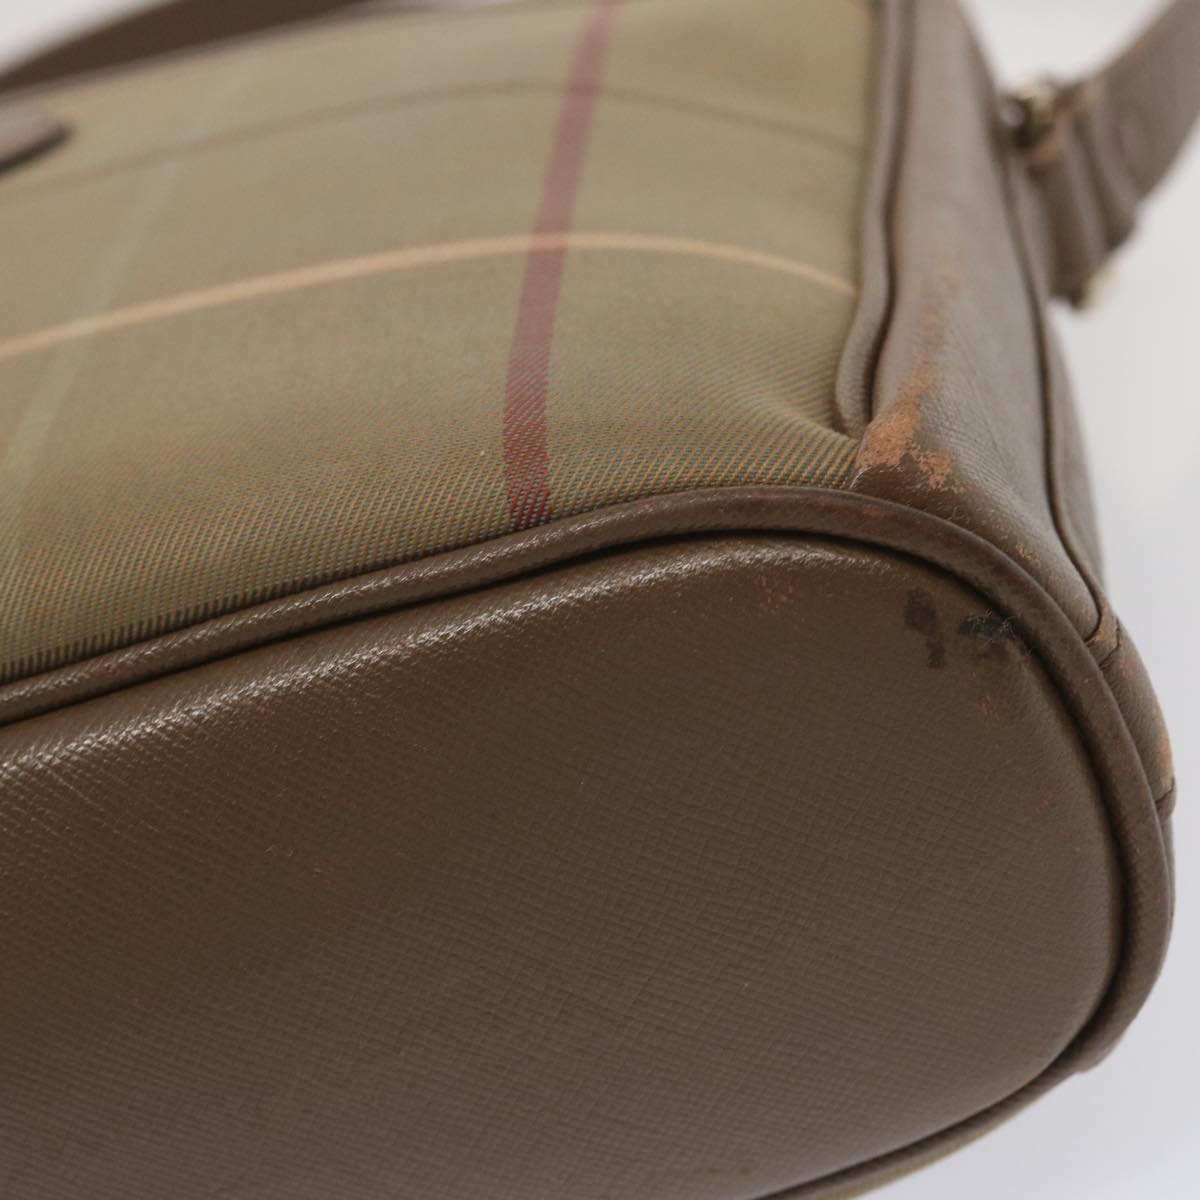 Burberrys Nova Check Shoulder Bag Canvas Beige Auth 69572